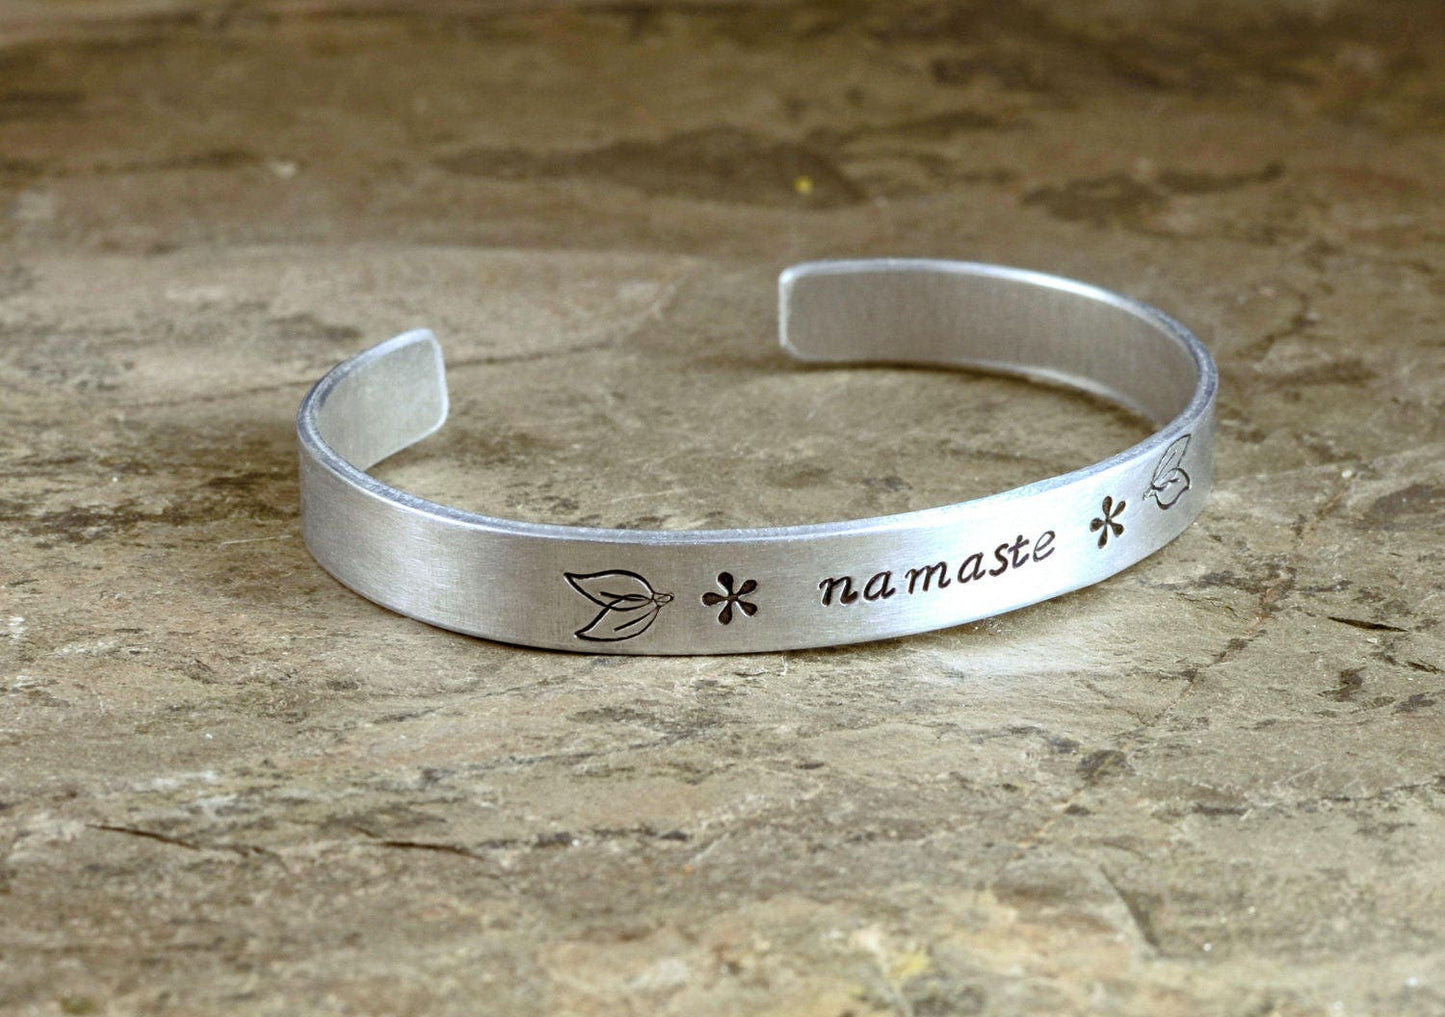 Aluminum Namaste Cuff Bracelet and Yoga Jewelry